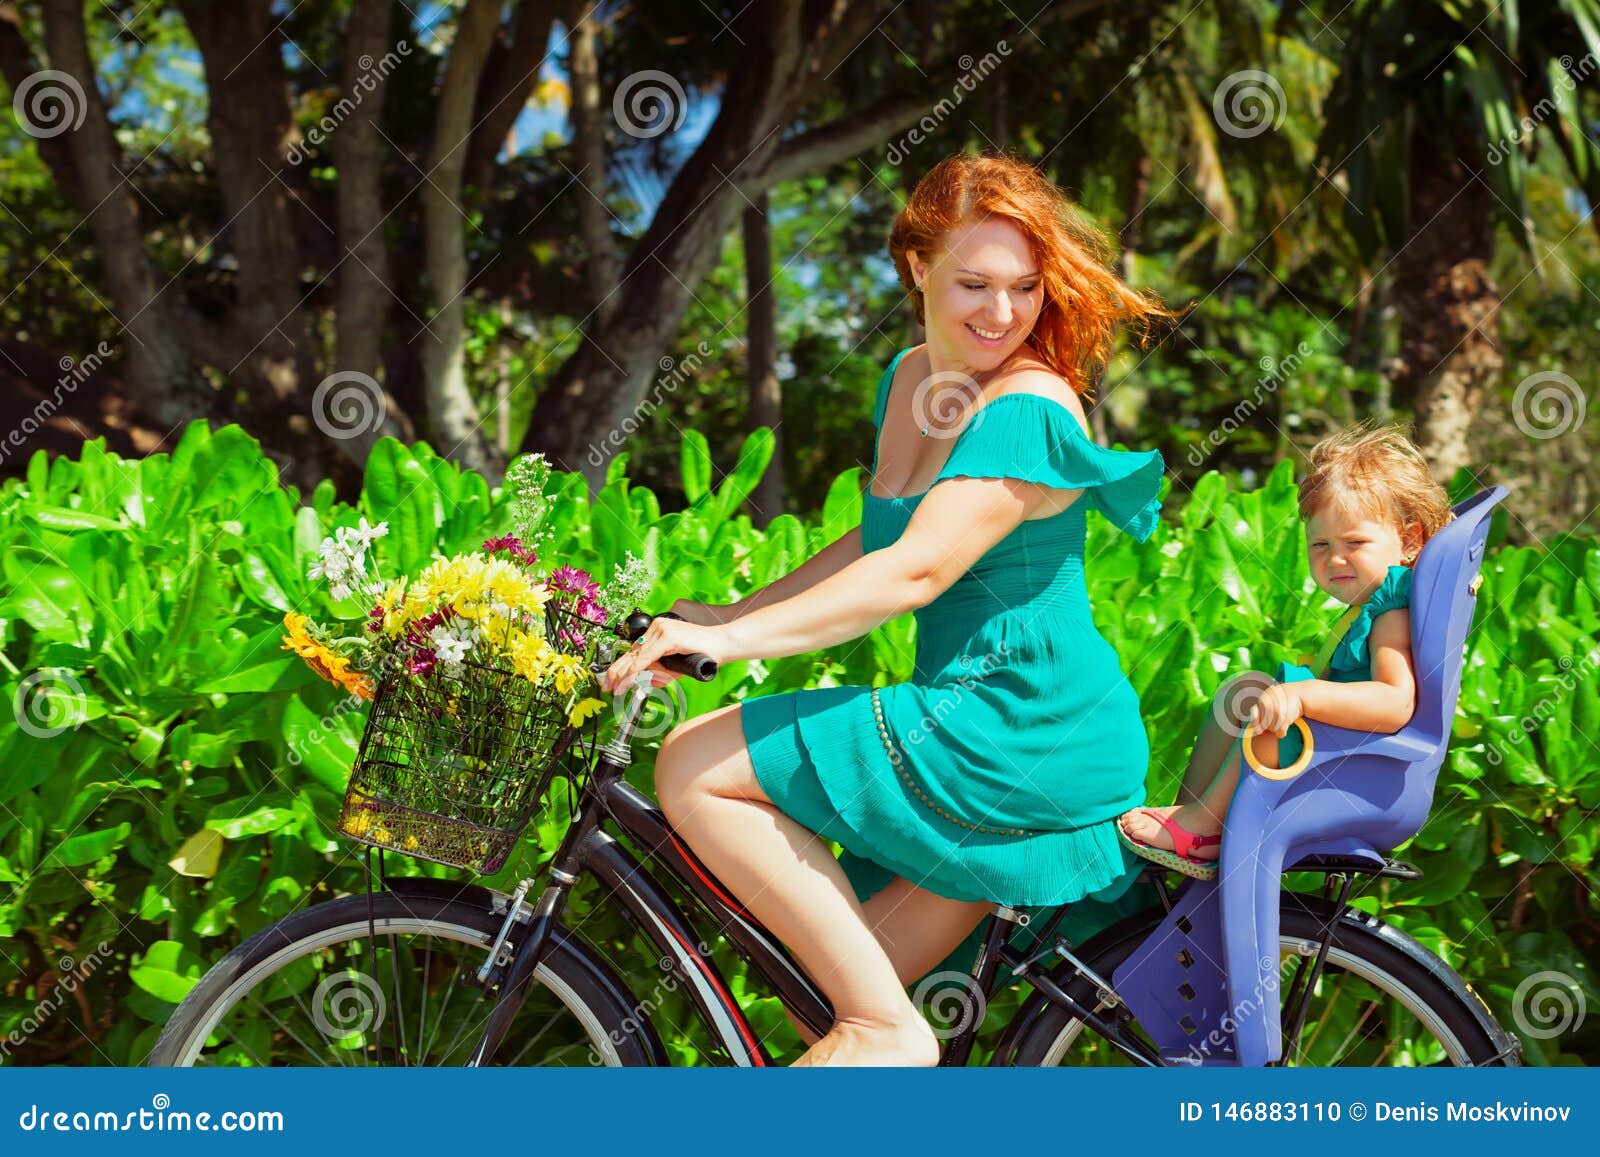 亲子骑行全攻略 我骑单车带娃看世界 - 美骑网|Biketo.com